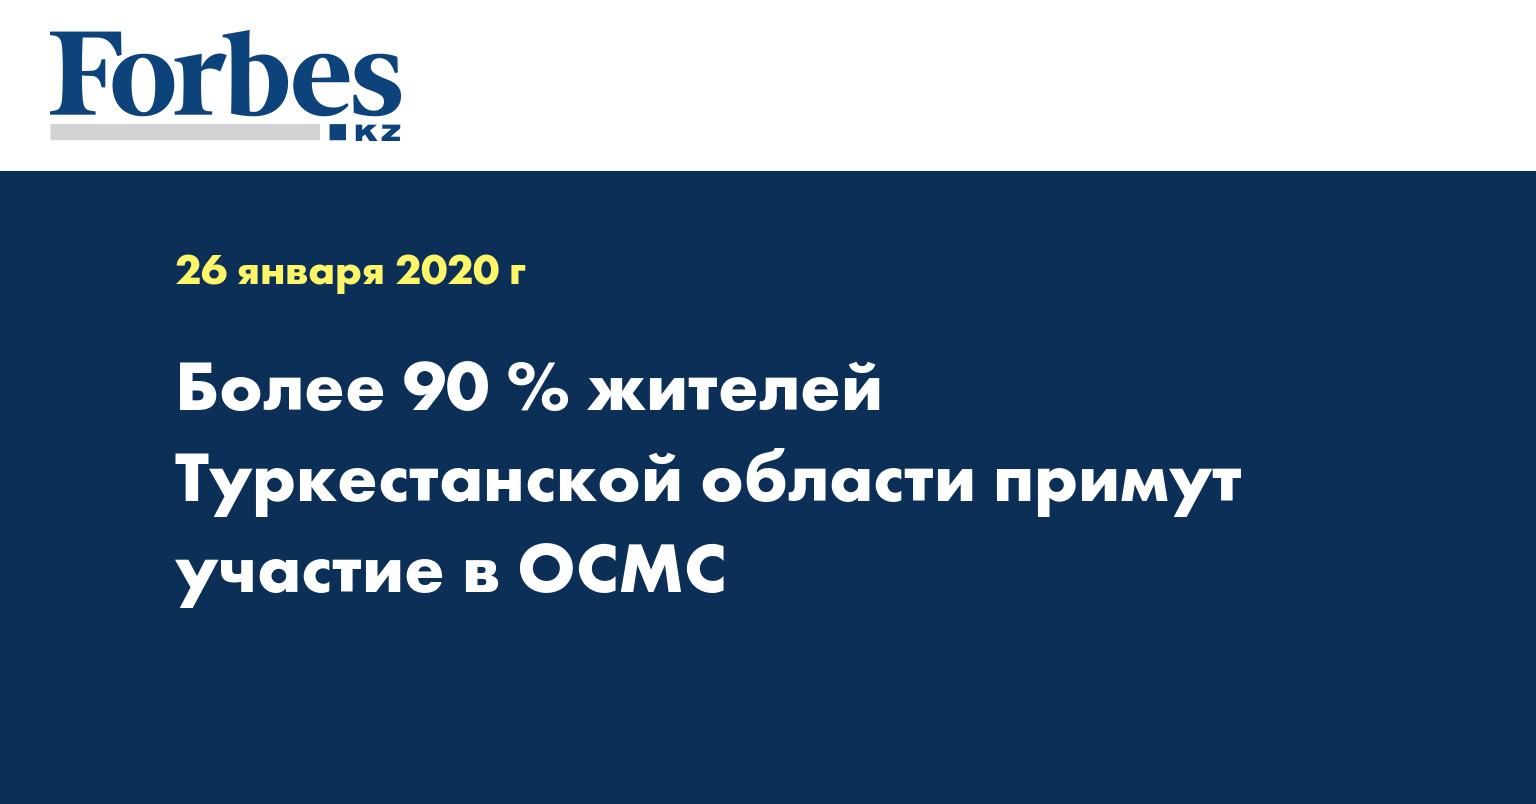 Более 90% жителей Туркестанской области примут участие в ОСМС  